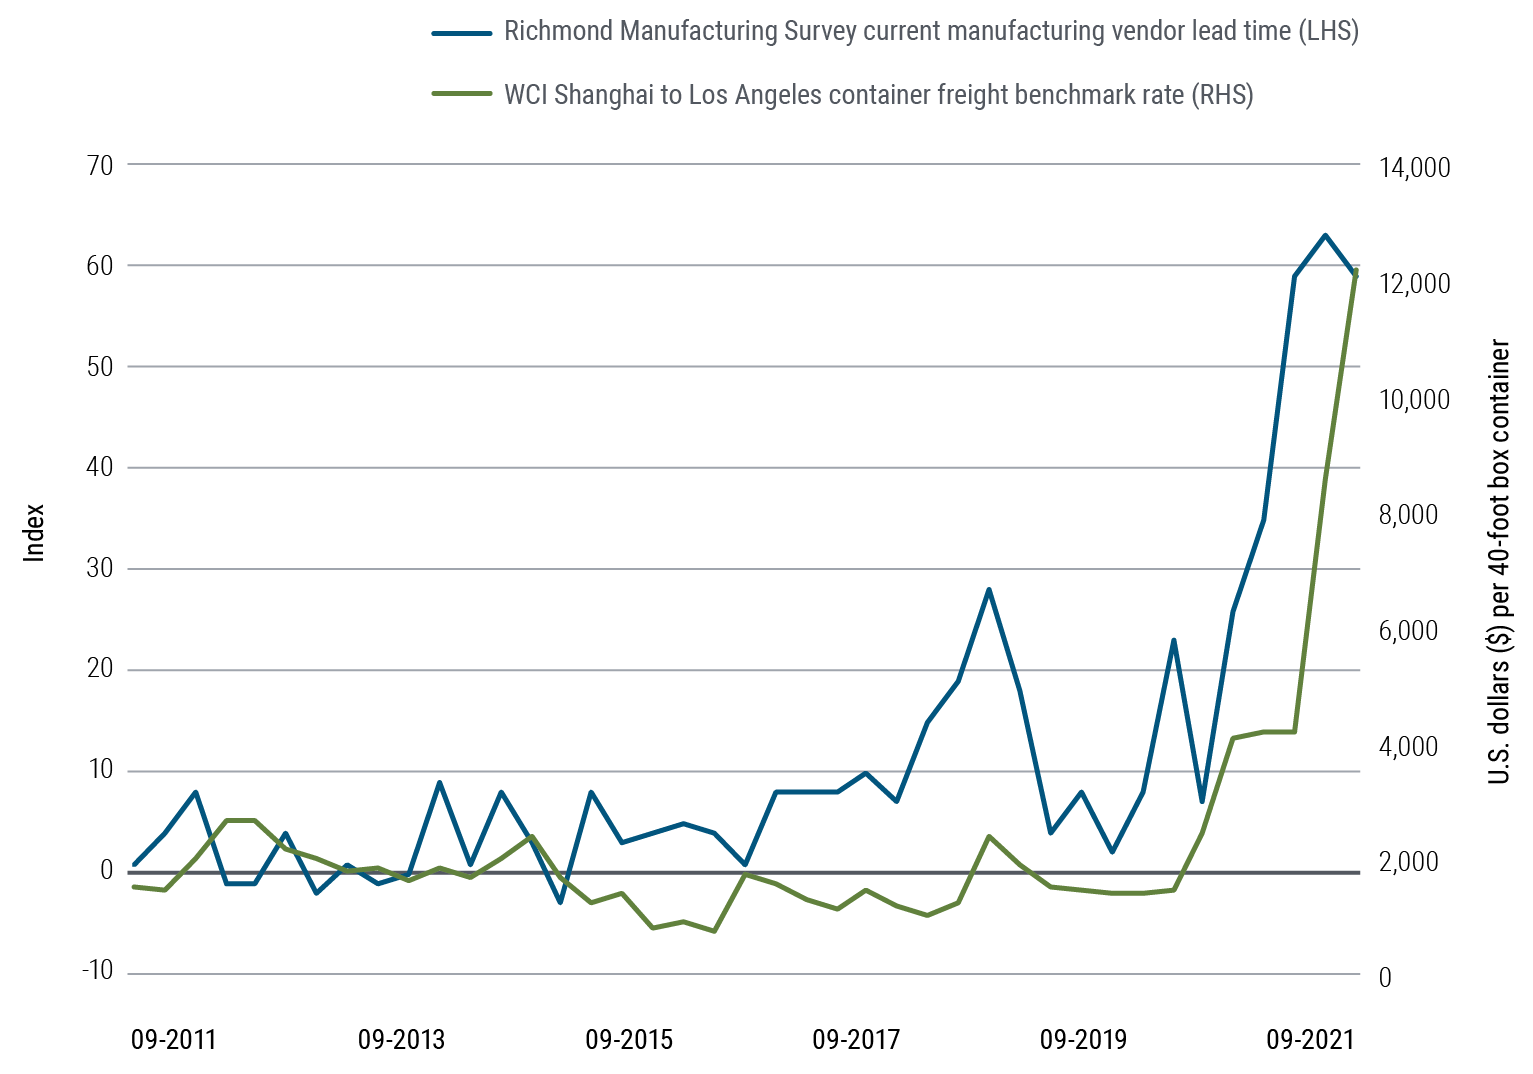 El gráfico 3 es un gráfico de líneas que muestra dos conjuntos de datos que van desde septiembre de 2011 hasta septiembre de 2021. El índice de la encuesta de producción de Richmond sobre los plazos de entrega actuales de los proveedores de manufacturas aumenta a lo largo del periodo de 1 a 59, con una serie de picos y valles, aunque se observa un pronunciado aumento que comienza en 2020 y alcanza un máximo de 63 en junio de 2021. El índice de referencia de carga de contenedores (WCI) de Shanghái a Los Ángeles aumenta desde 1.524 USD en septiembre de 2011 hasta 12.172 USD en septiembre de 2021, con al incremento más acusado en 2021. Este gráfico representa lo que cuesta de media enviar un contenedor estándar de alrededor de 12 metros entre Shanghái y Los Ángeles.